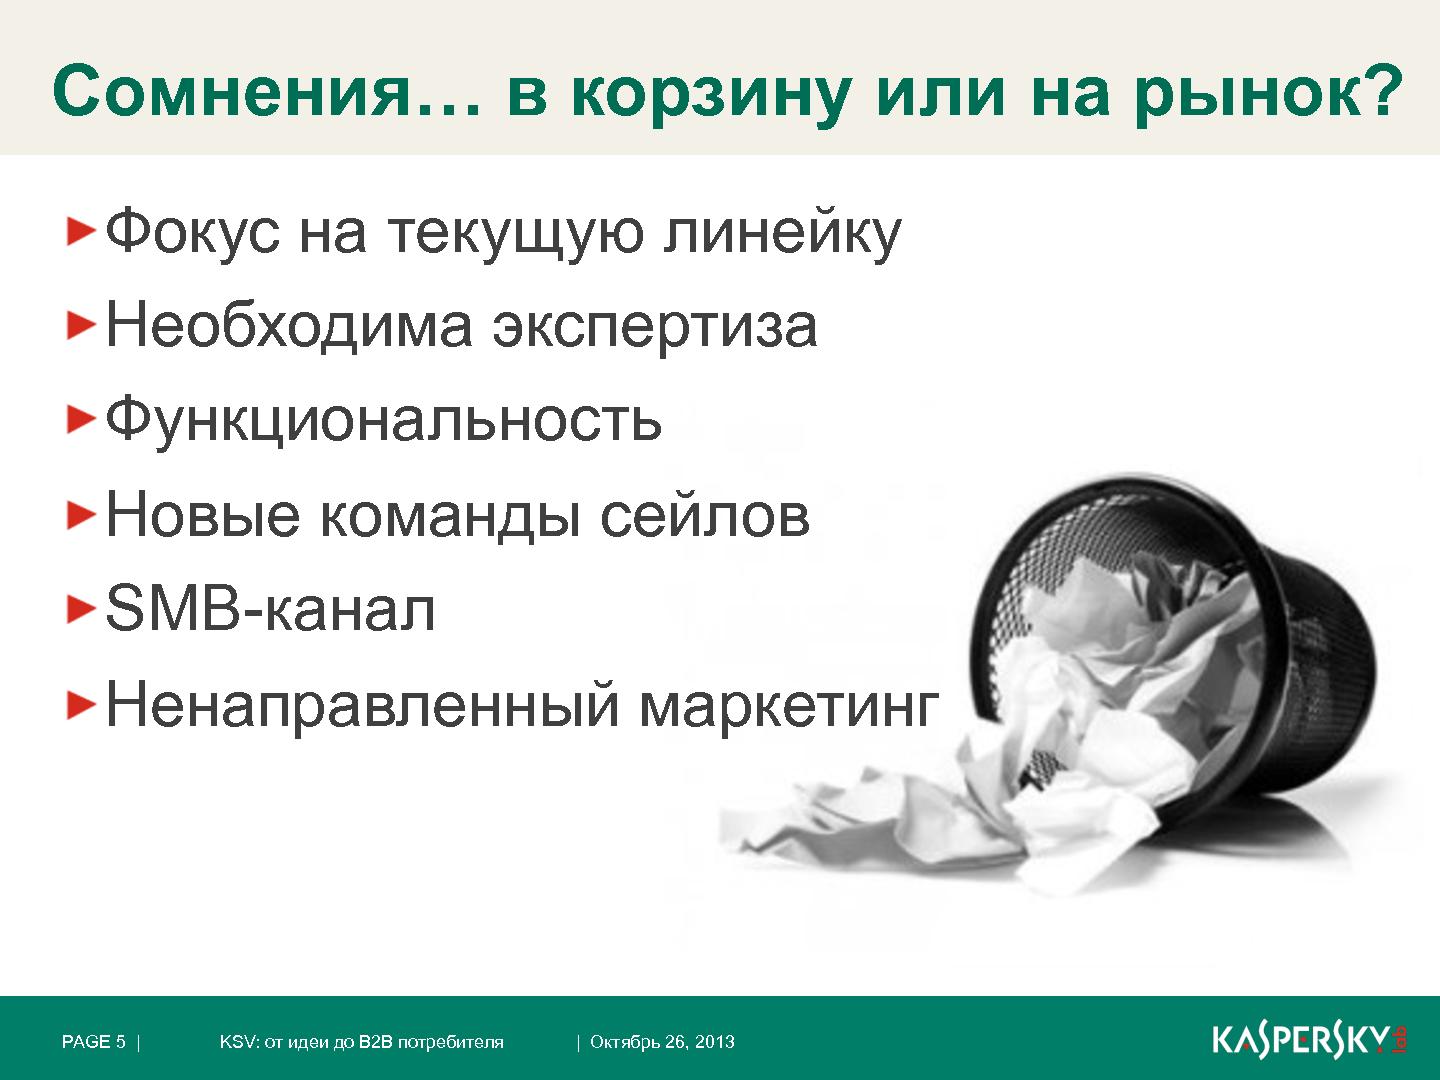 Файл:Kaspersky Security для виртуальных сред. От идеи до B2B потребителя (Константин Воронков, ProductCamp-2013).pdf